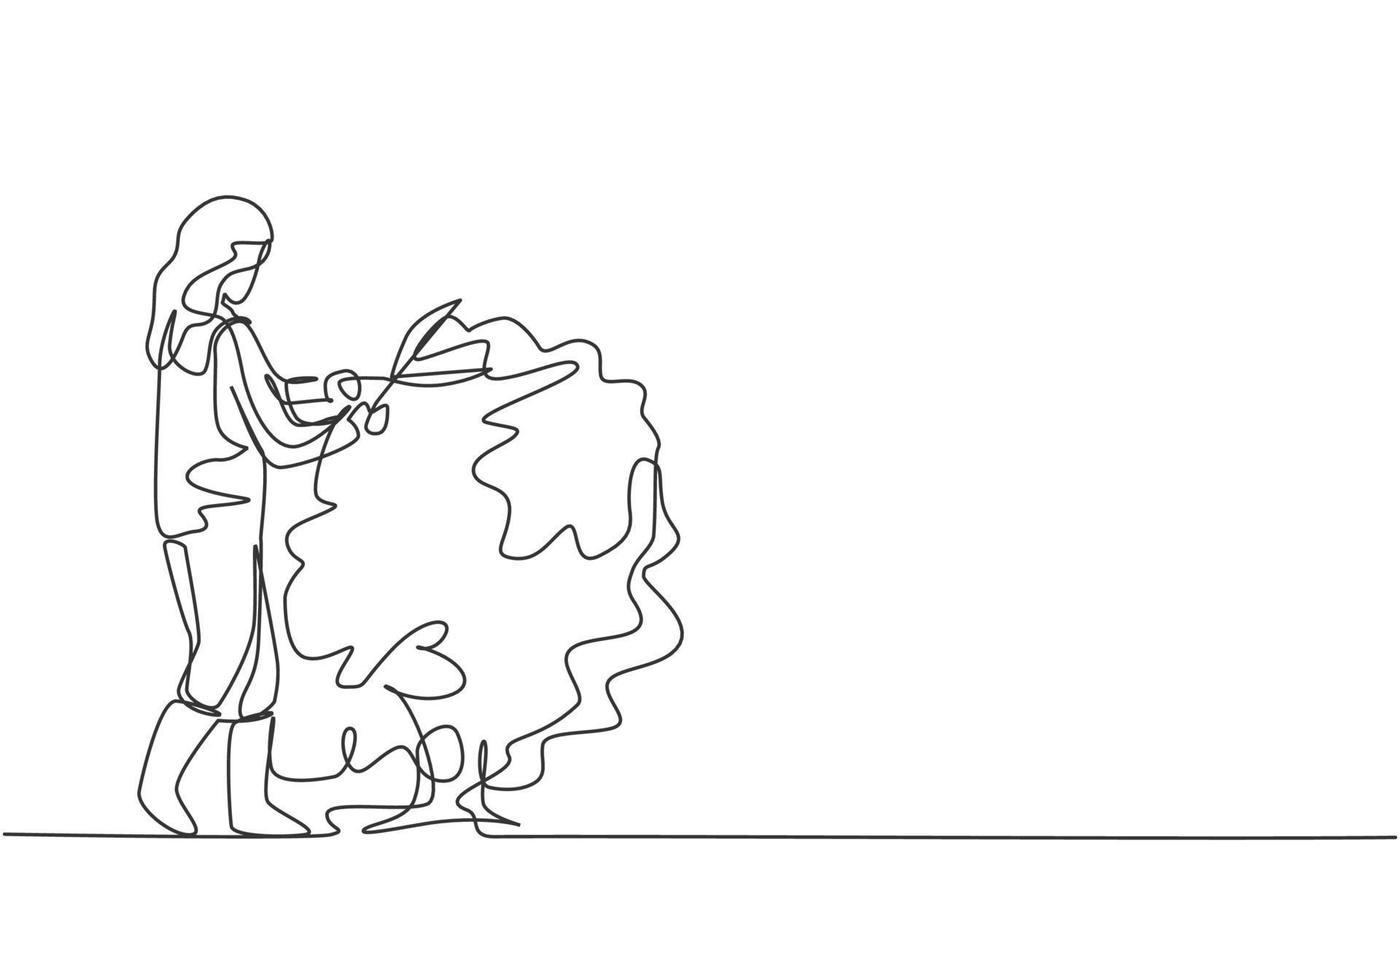 dibujo continuo de una línea joven agricultora corta las hojas del árbol con tijeras para plantas. concepto minimalista de desafío agrícola. Ilustración gráfica de vector de diseño de dibujo de una sola línea.